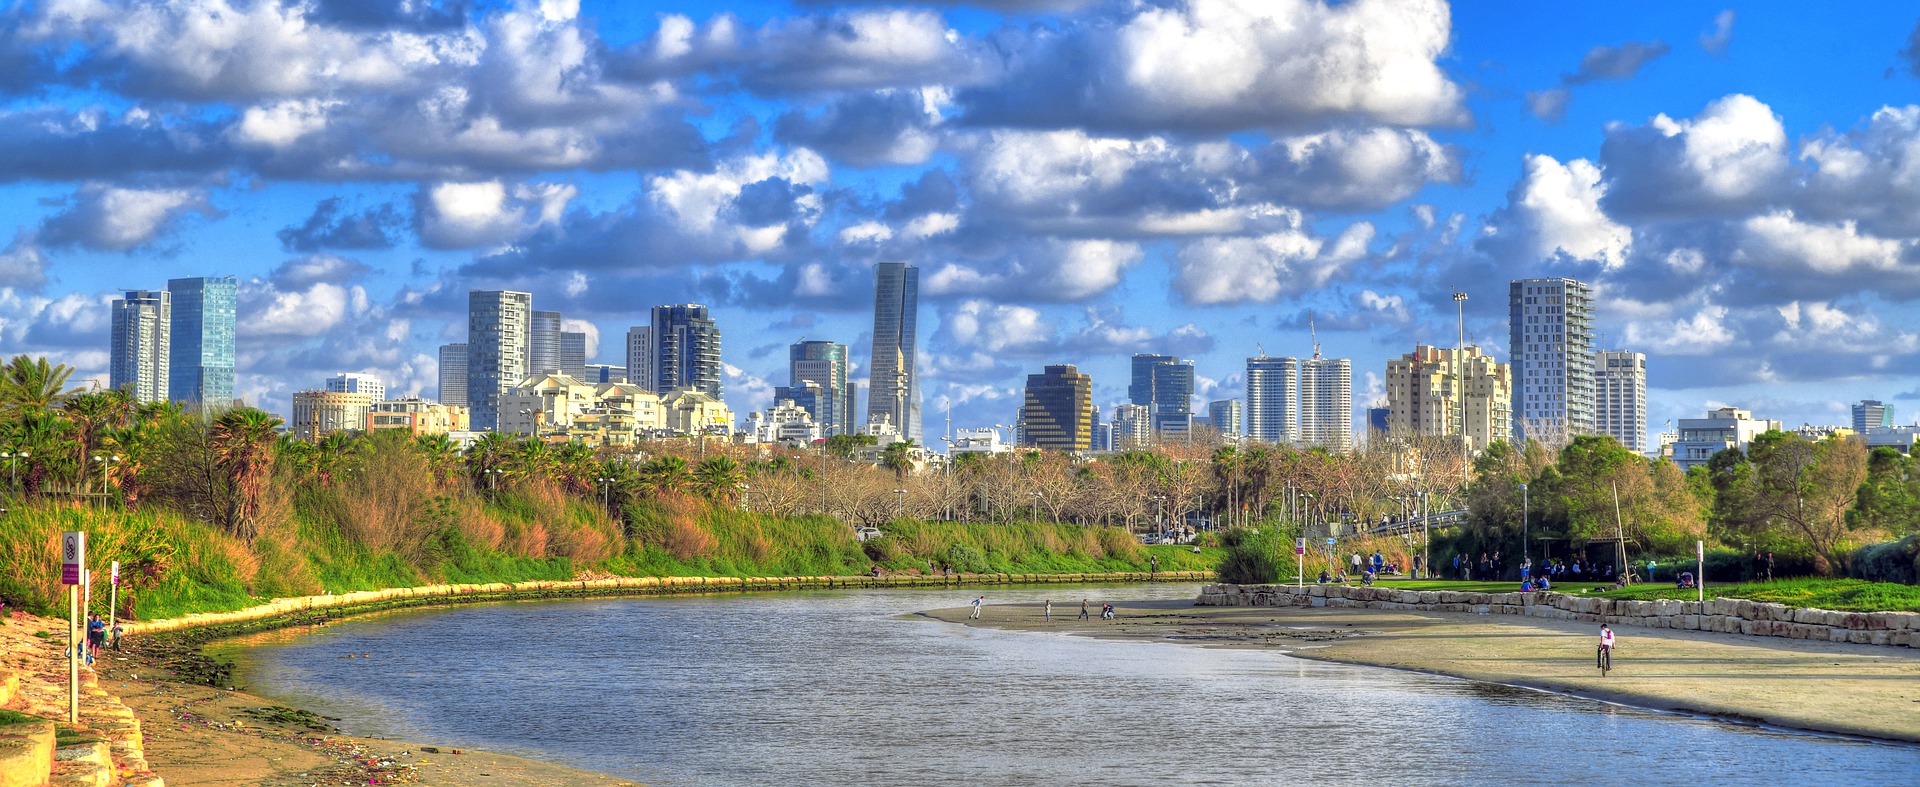 Тель-Авив признан самым дорогим городом мира по версии EIU